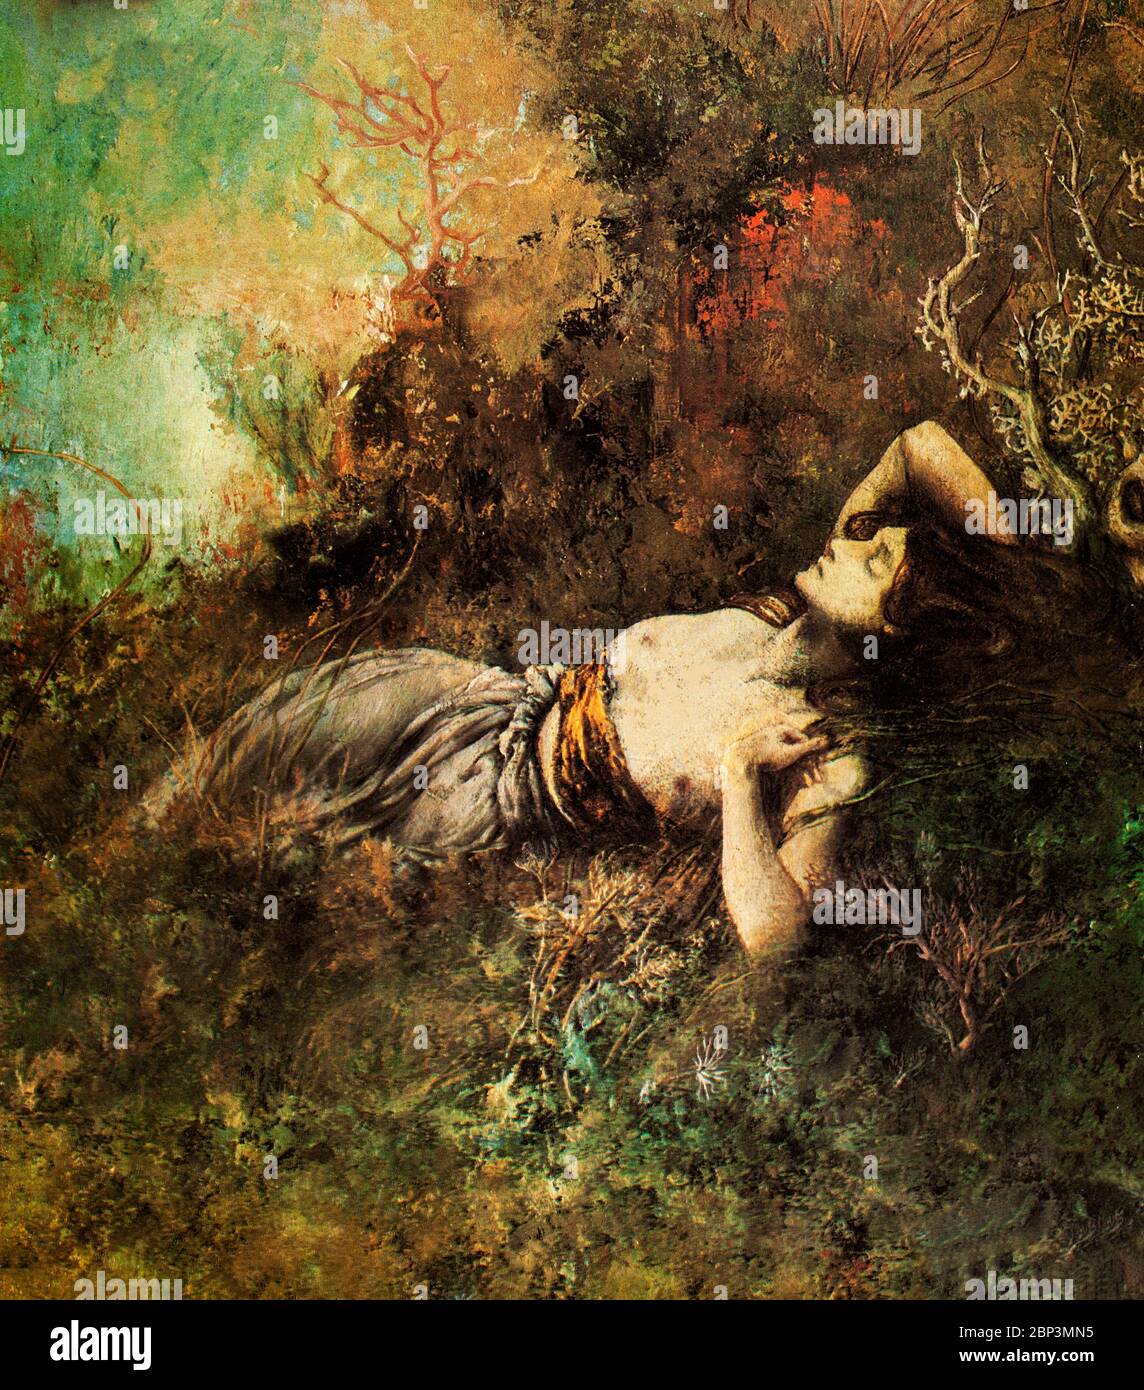 Ein Ausschnitt aus 'Sappho' von Cornelius Ary Renan (1857-1900). Sappho wurde weithin als einer der größten Lyriker angesehen und erhielt Namen wie die "zehnte Muse" und "die Dichterin. Renan war ein französischer Symbolist, der bei Elie Delaunay und Pierre Puvis de Chavannes studierte und ein enger Freund Gustave Moreaus wurde. Stockfoto